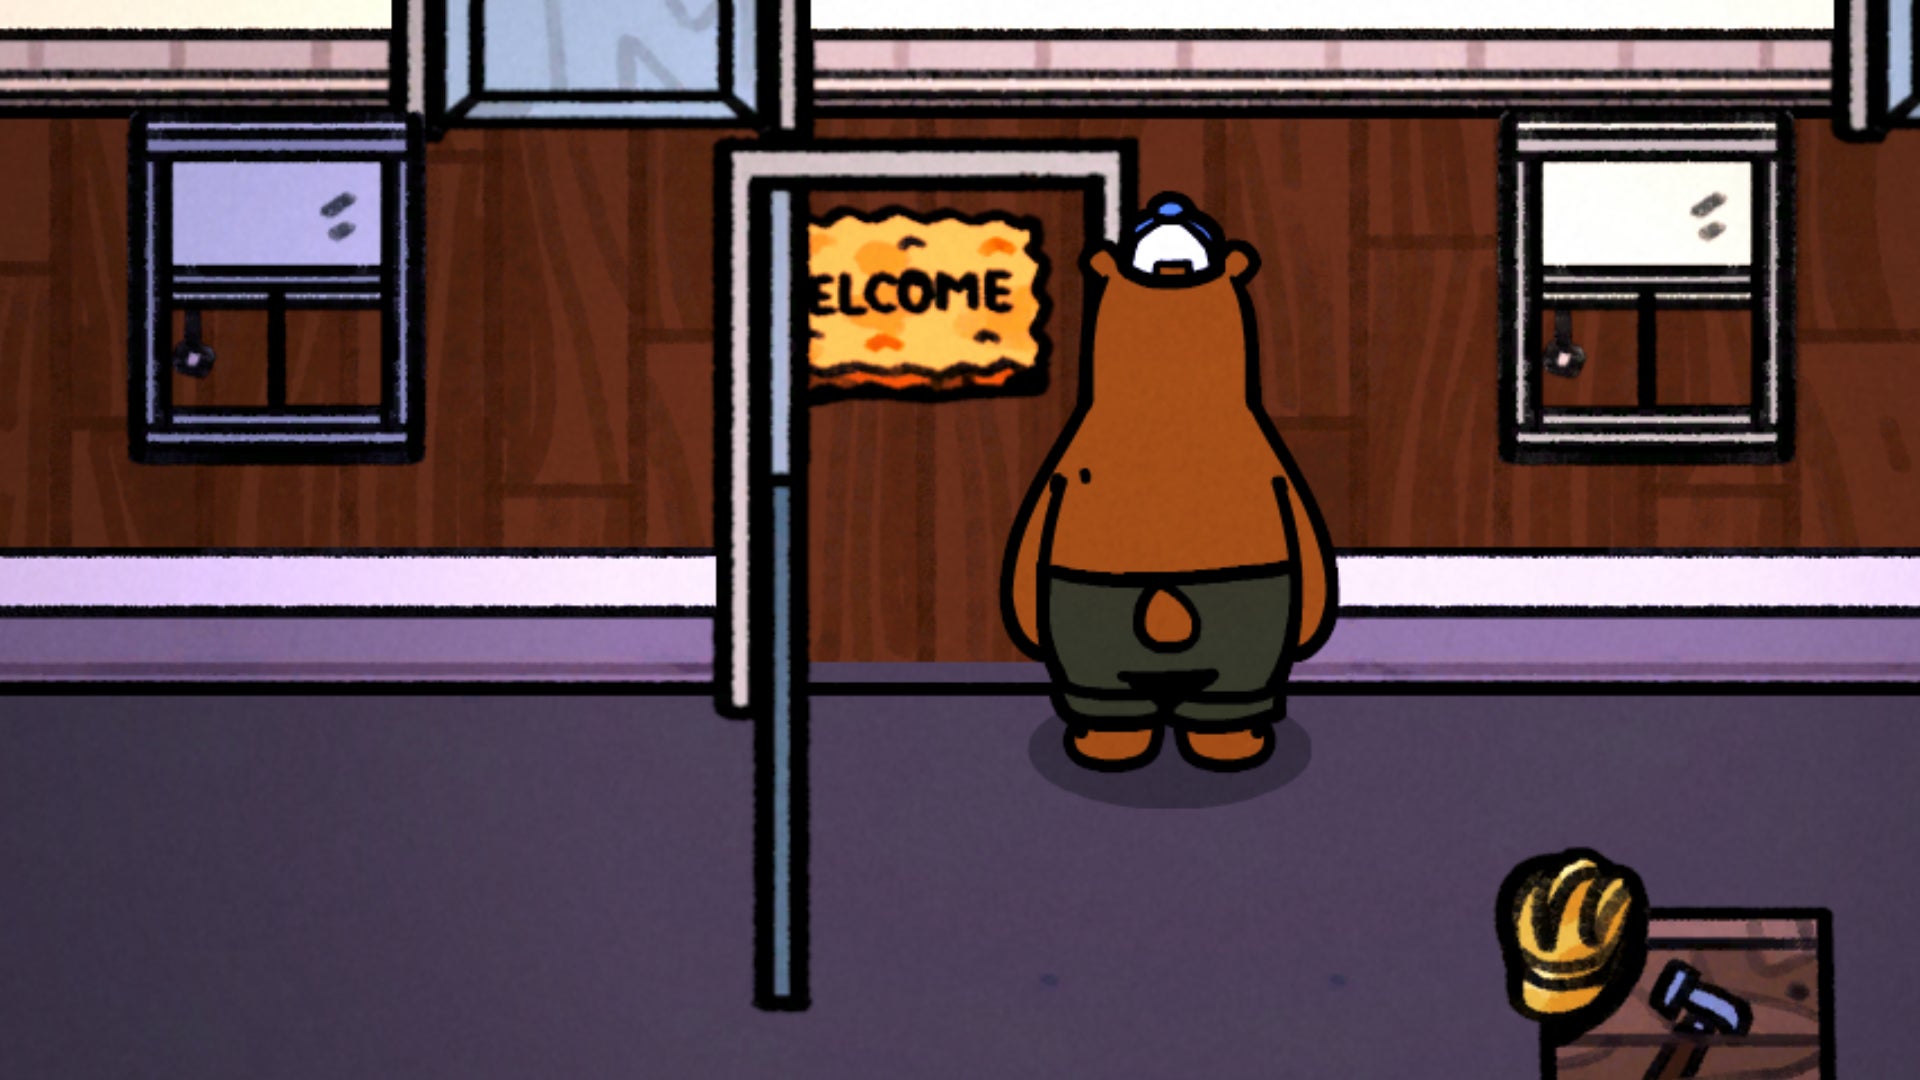 Captura de pantalla de un tapete de bienvenida desalineado con la puerta en Bear And Breakfast.